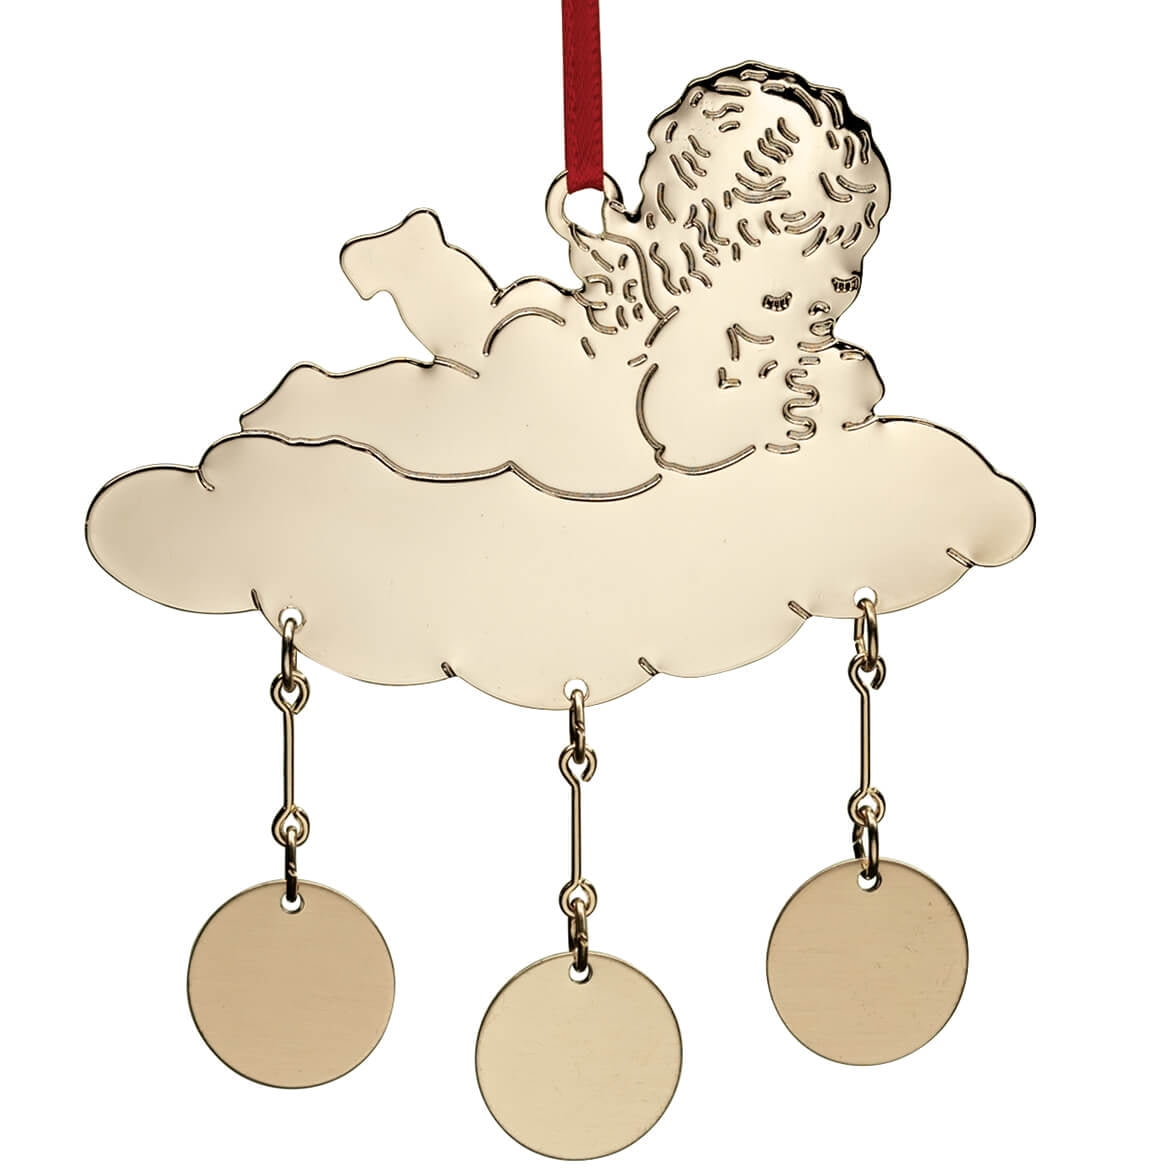 Baby on a Cloud Ornament - Walmart.com 